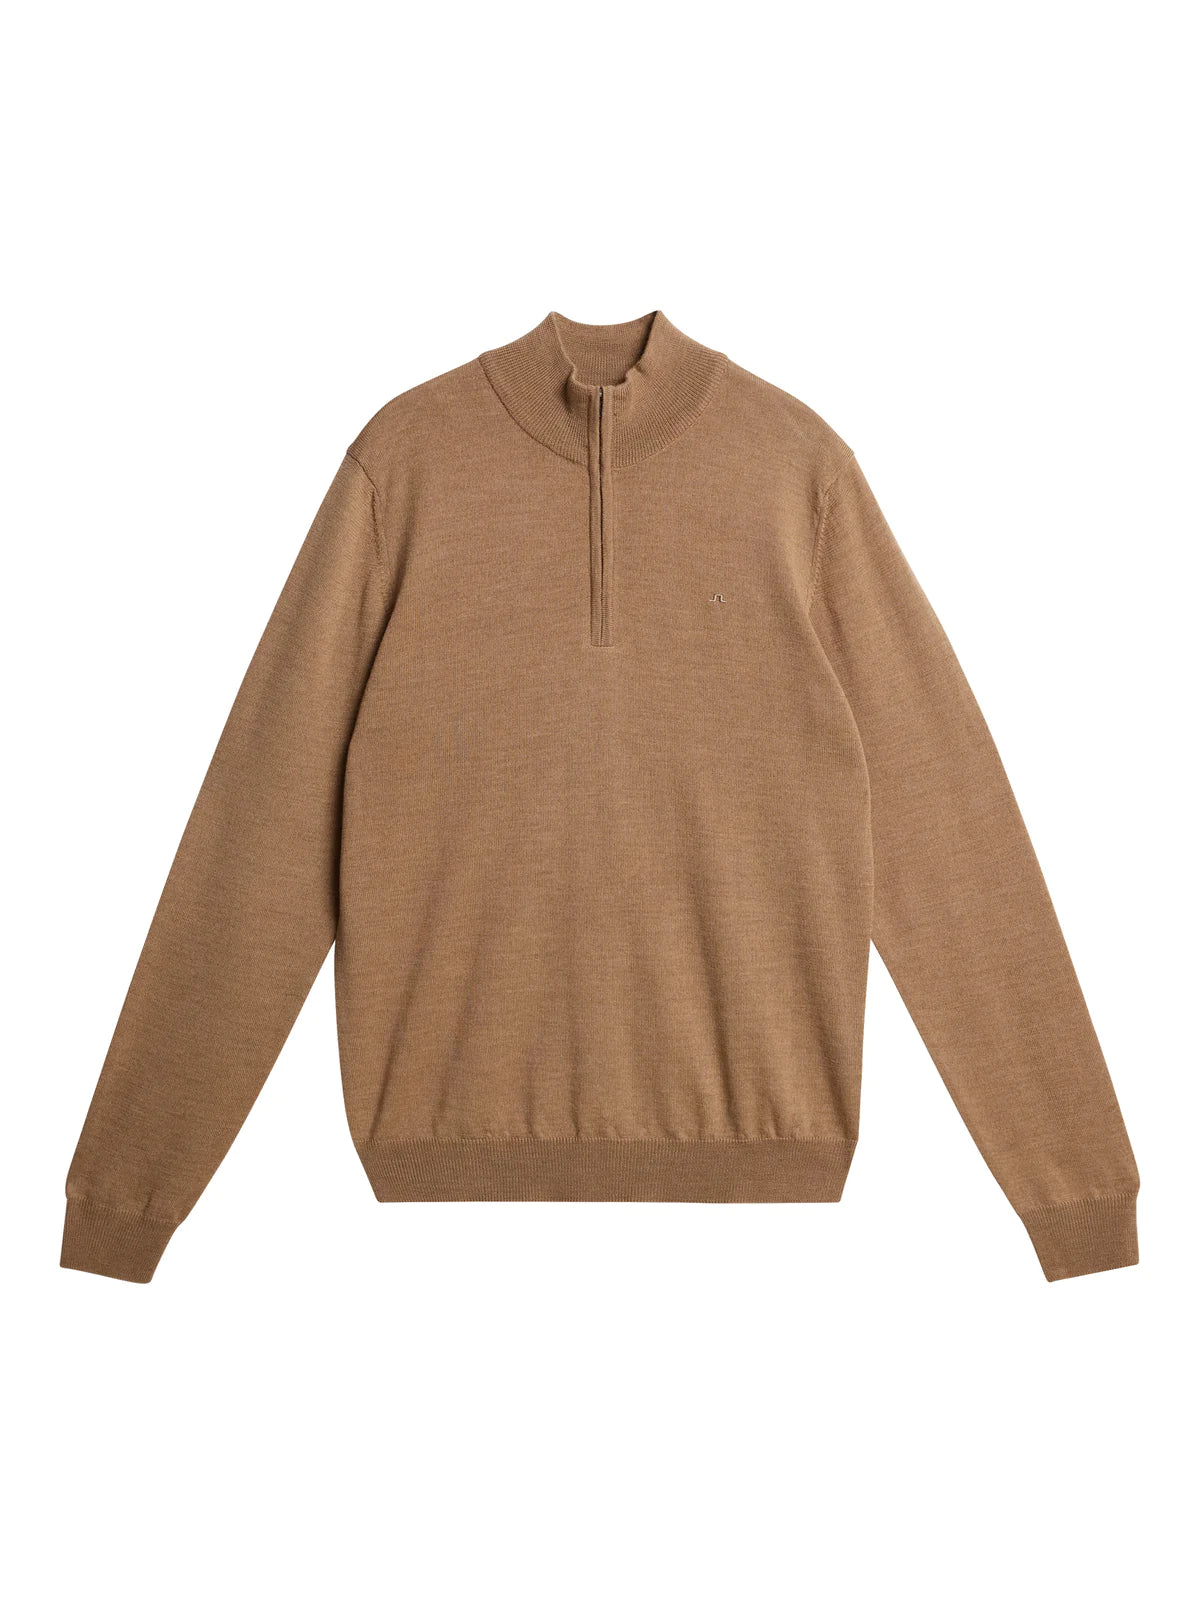 Kiyan Quarter Zip Sweater